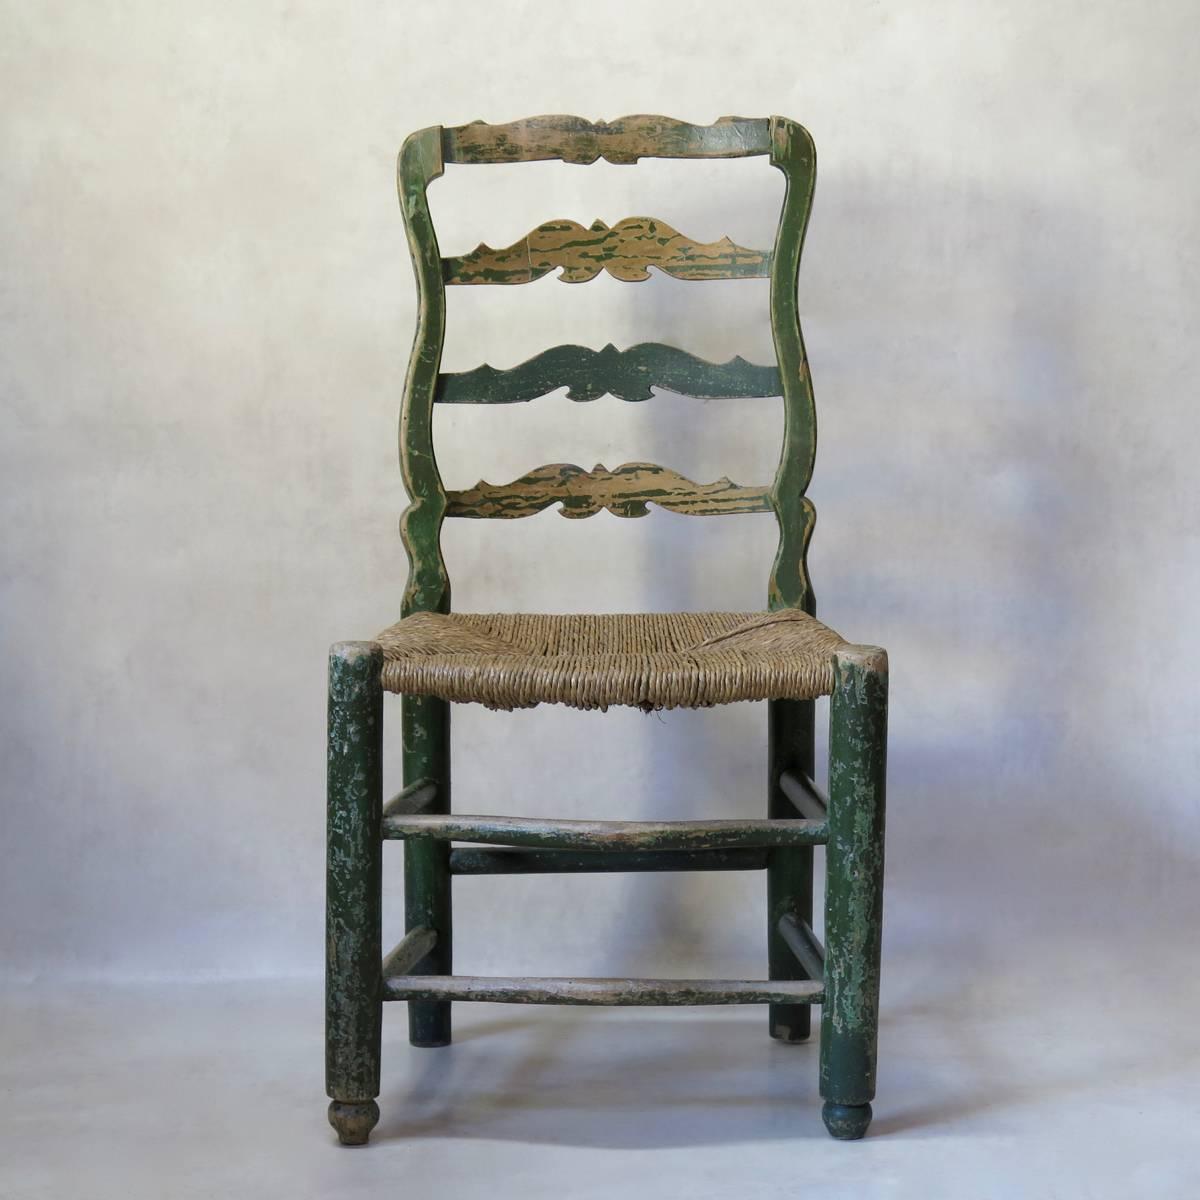 Schöner Satz von vier antiken Buchenholzstühlen mit grüner Originalfarbe und Binsen-Sitzen. Elegant geschwungene vordere Fußstützen. Weit und bequem.